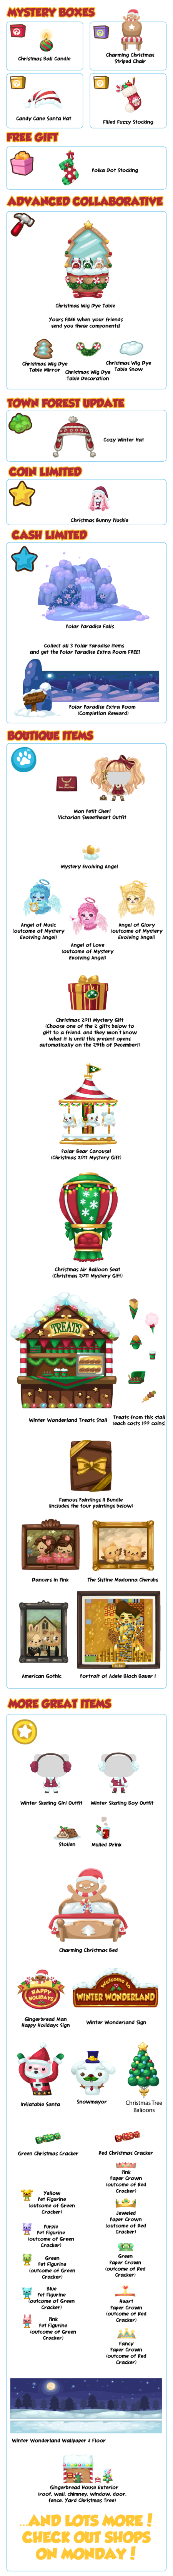 Winter Wonderland semana de Navidad actualizacion 15/12/11 2190_preview-011